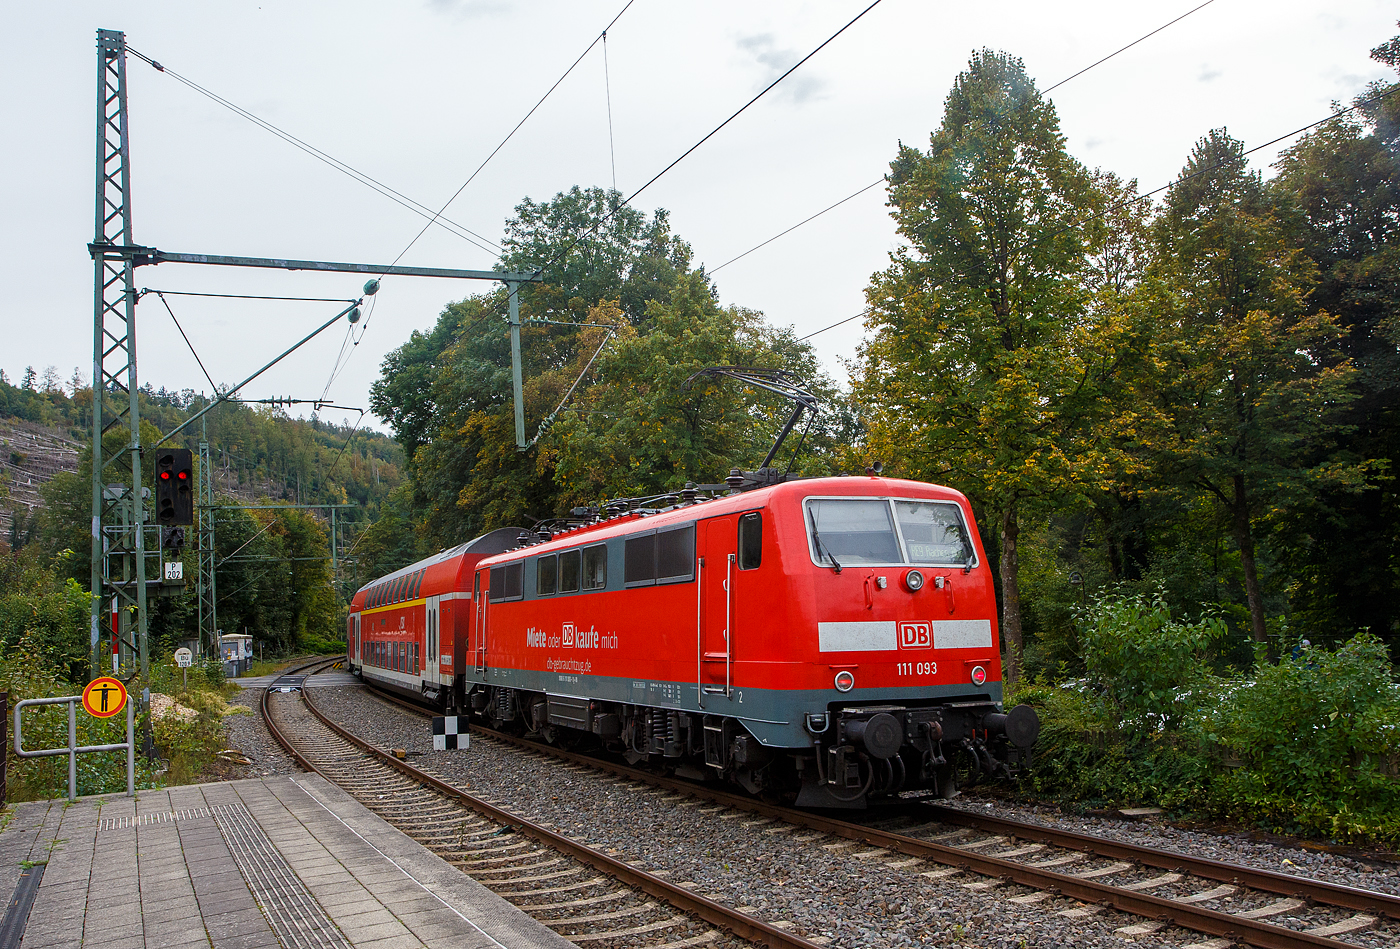 Nun ist endlich auch die Siegstrecke (KBS 460) wieder durchgängig offen. Wegen einer Gleisabsenkung in Höhe Etzbach, war sie zwischen Wissen und Au (Sieg) wochenlang gesperrt. 

Die 111 093-1 (91 80 6111 093-1 D-DB) der DB Regio NRW bzw. der DB-Gebrauchtzug schiebt nun den RE 9, (rsx - Rhein-Sieg-Express) von Siegen via Köln Hbf nach Aachen Hbf, vom Bahnhof Kirchen (Sieg) weiter in Richtung Betzdorf.

Die Lok wurde 1978 von Krupp unter der Fabriknummer 5430 gebaut, der elektrische Teil wurde von AEG unter der Fabriknummer 8972 geliefert.
